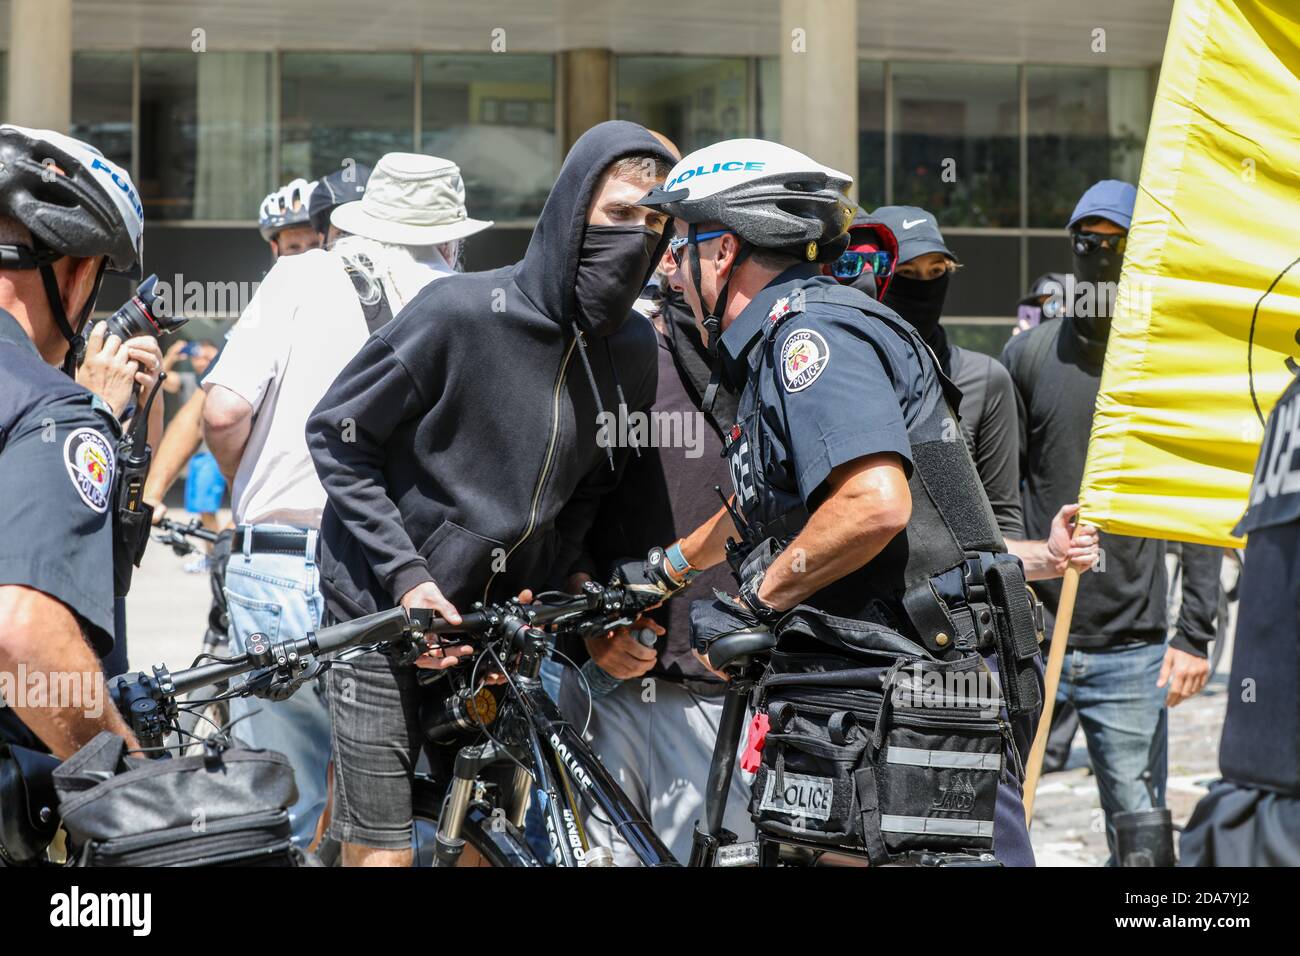 Des manifestants masqués affrontent la police pendant la manifestation.UN rassemblement « Stop the Hate » a été organisé par des manifestants antifascistes de l'ANTIFA à Nathan Phillip Square, en opposition à WCAI (Coalition mondiale contre l'islam) Canada, un groupe qui a organisé une manifestation le même jour. Banque D'Images